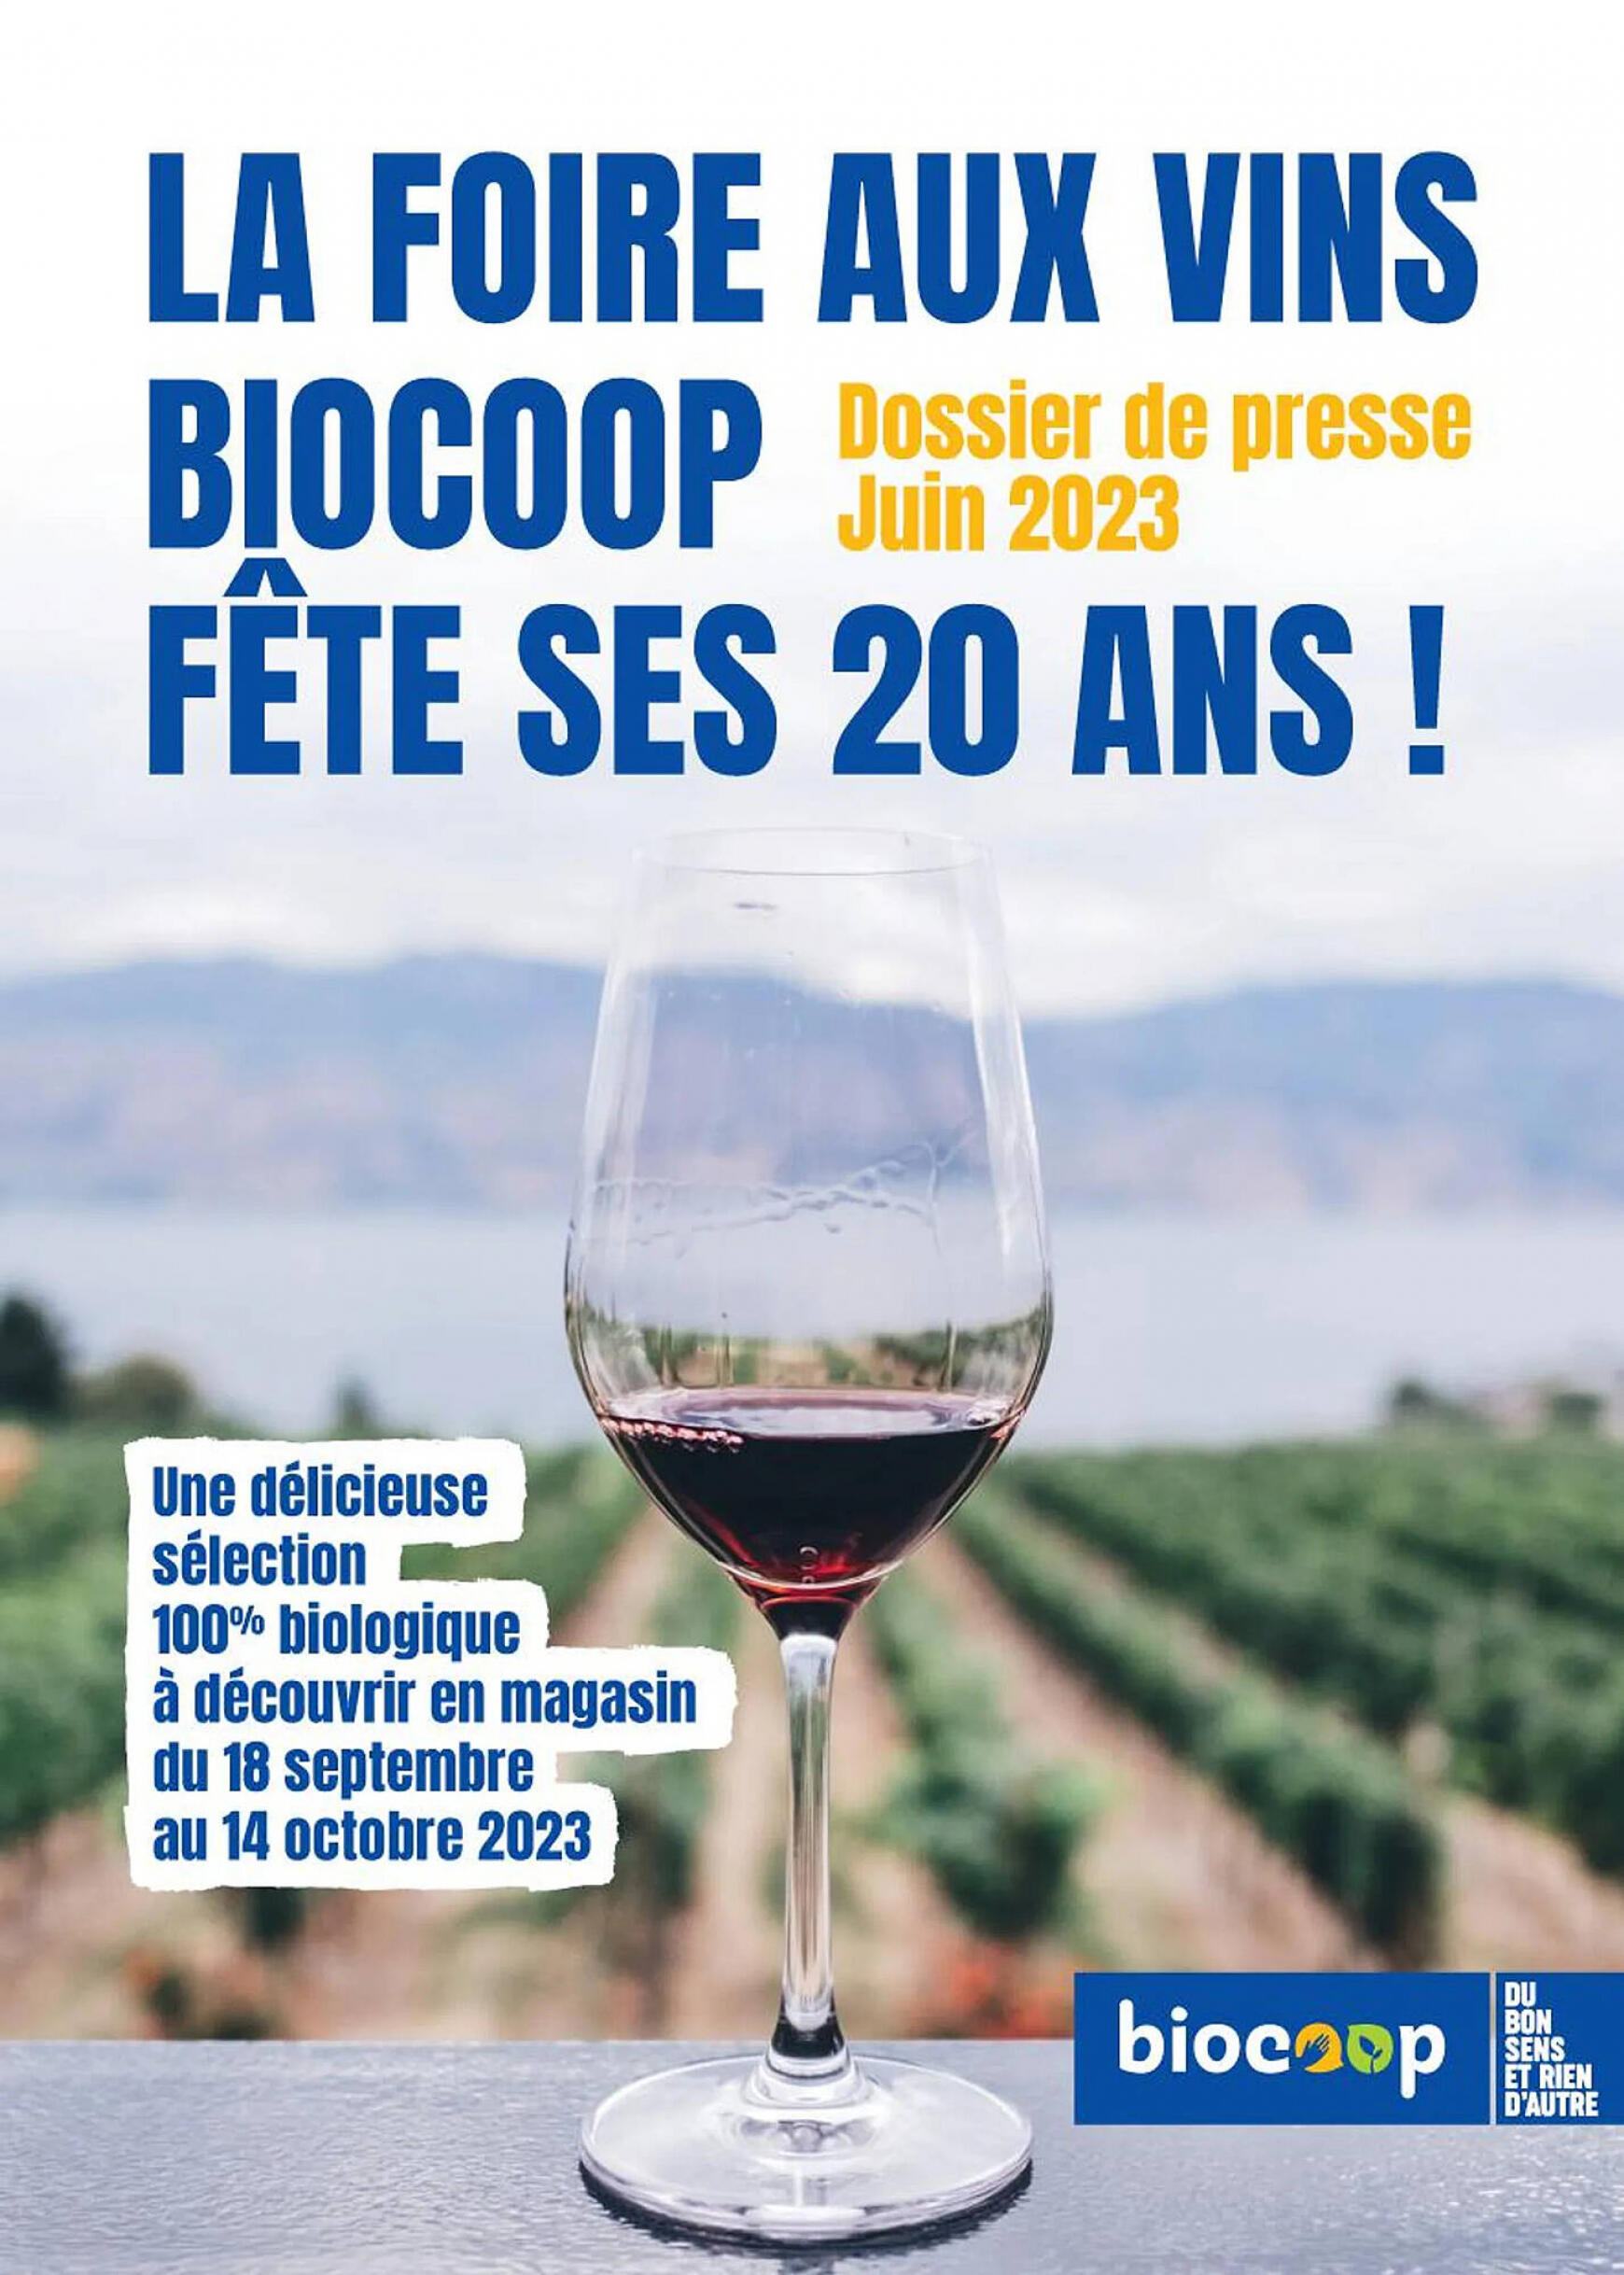 biocoop - Biocoop - Vins - page: 1